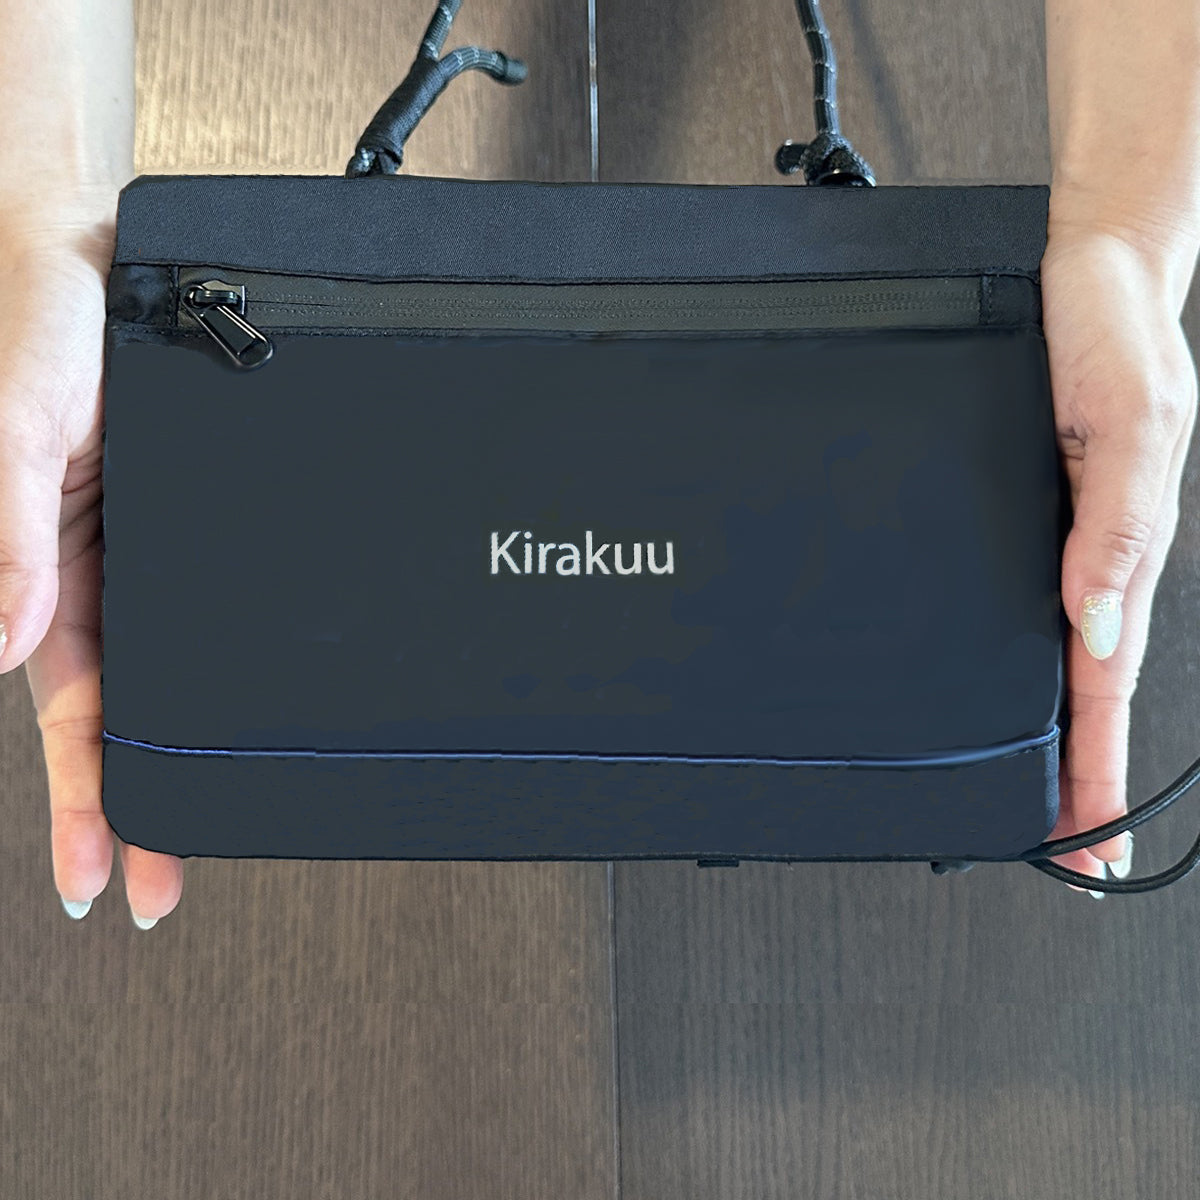 Kirakuu Travel Bag